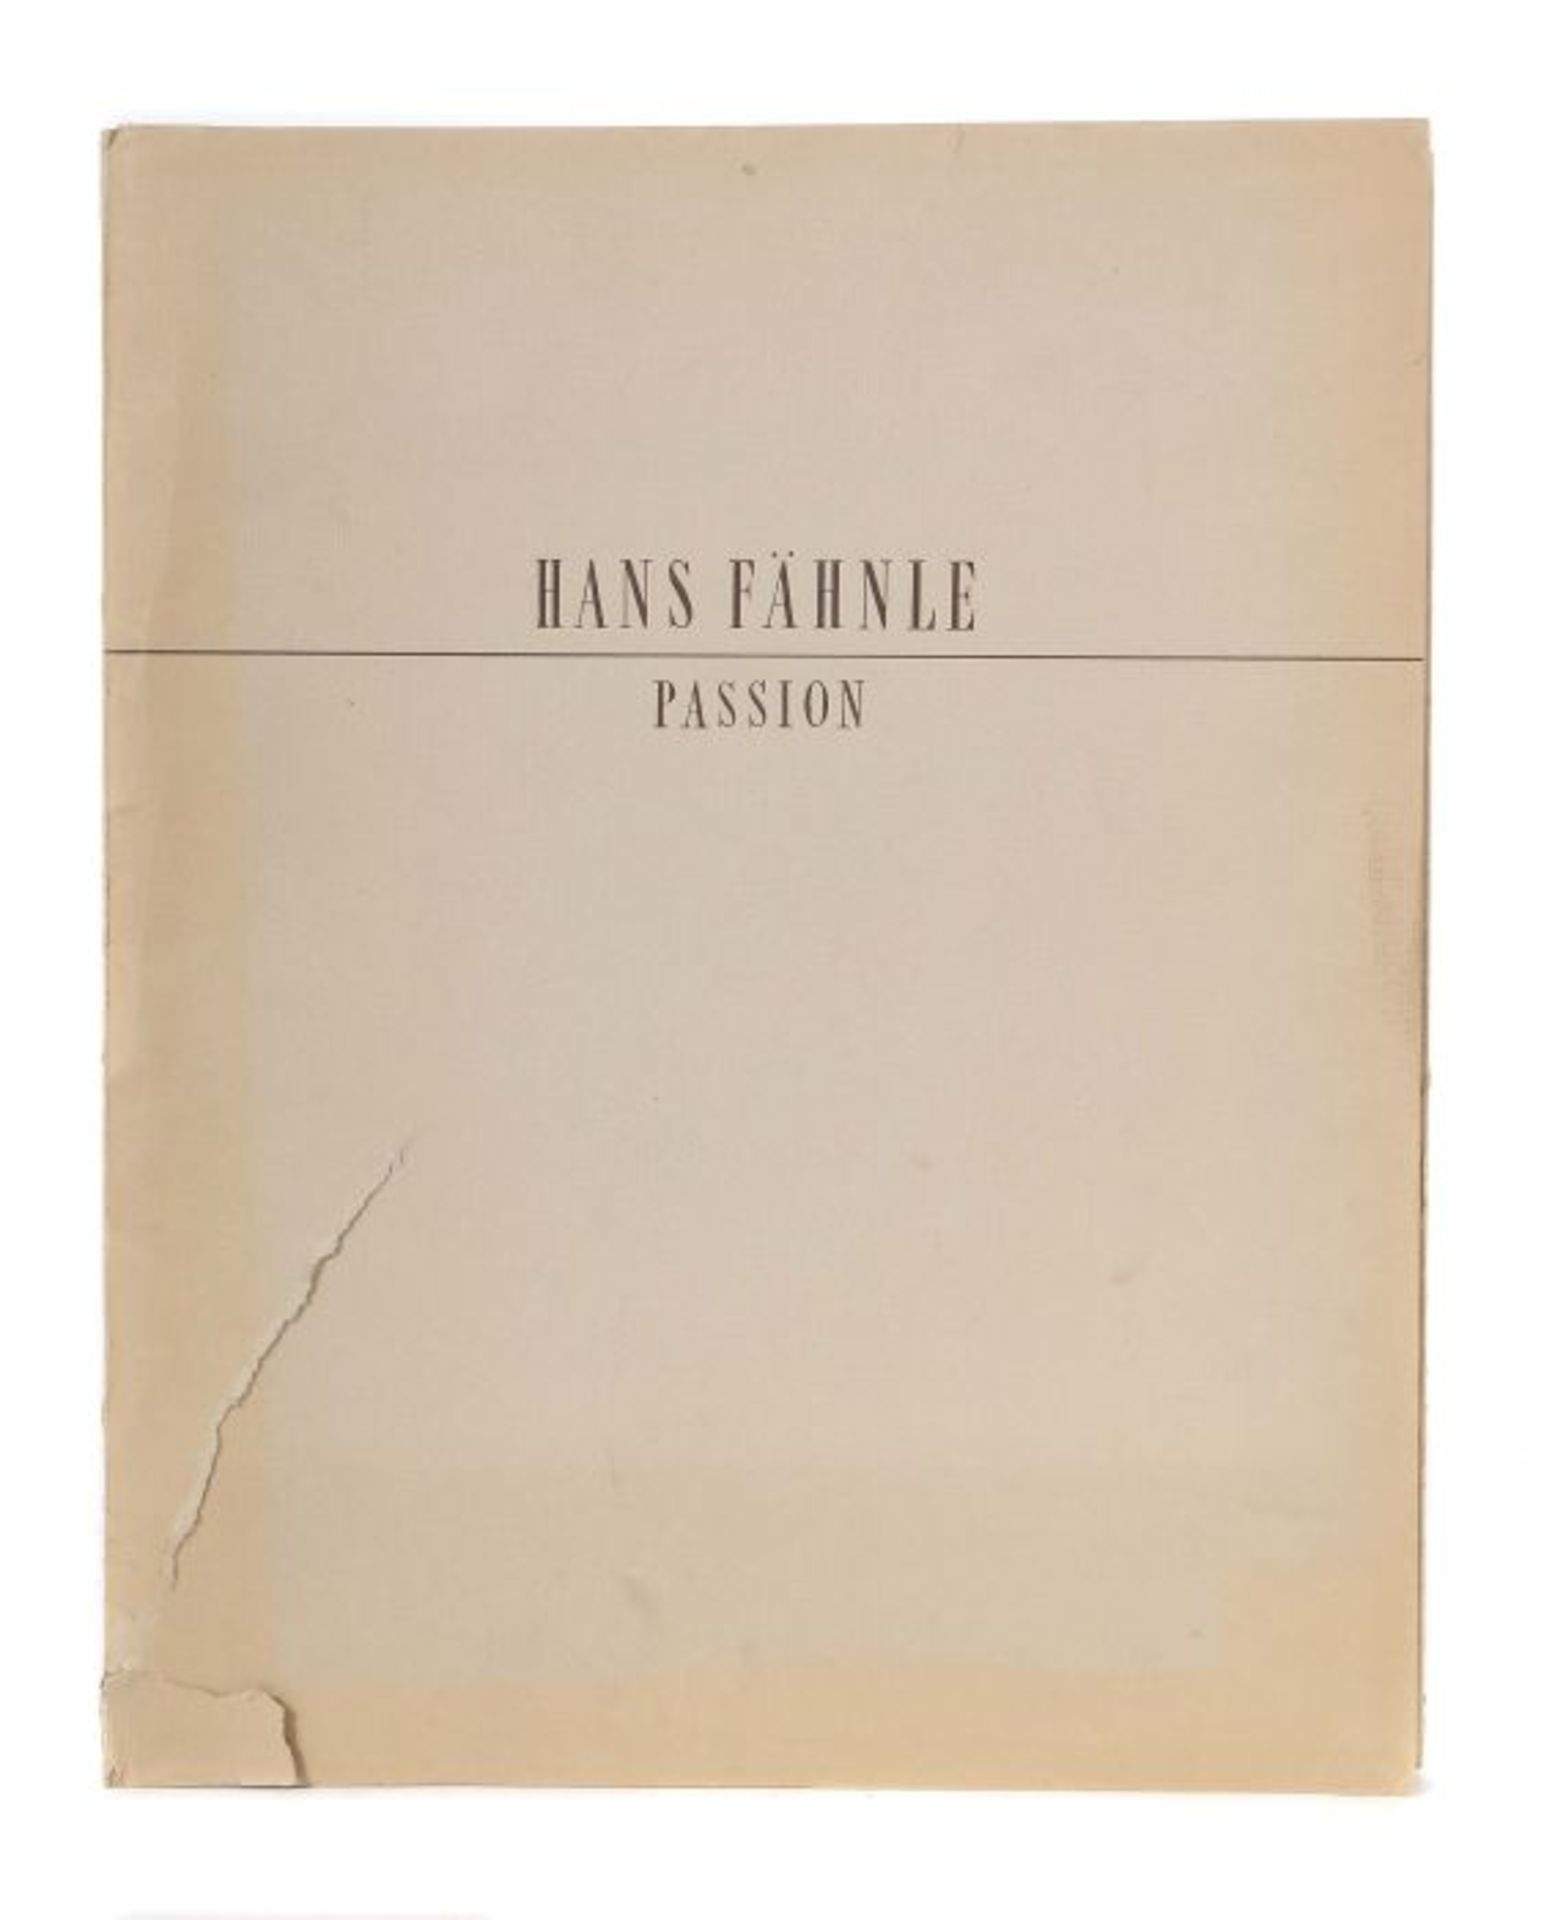 Fähnle, Hans Passion 1942, 22 Kreidezeichnungen von Hans Fähnle, Lichtdruck-Ausführung Graphische